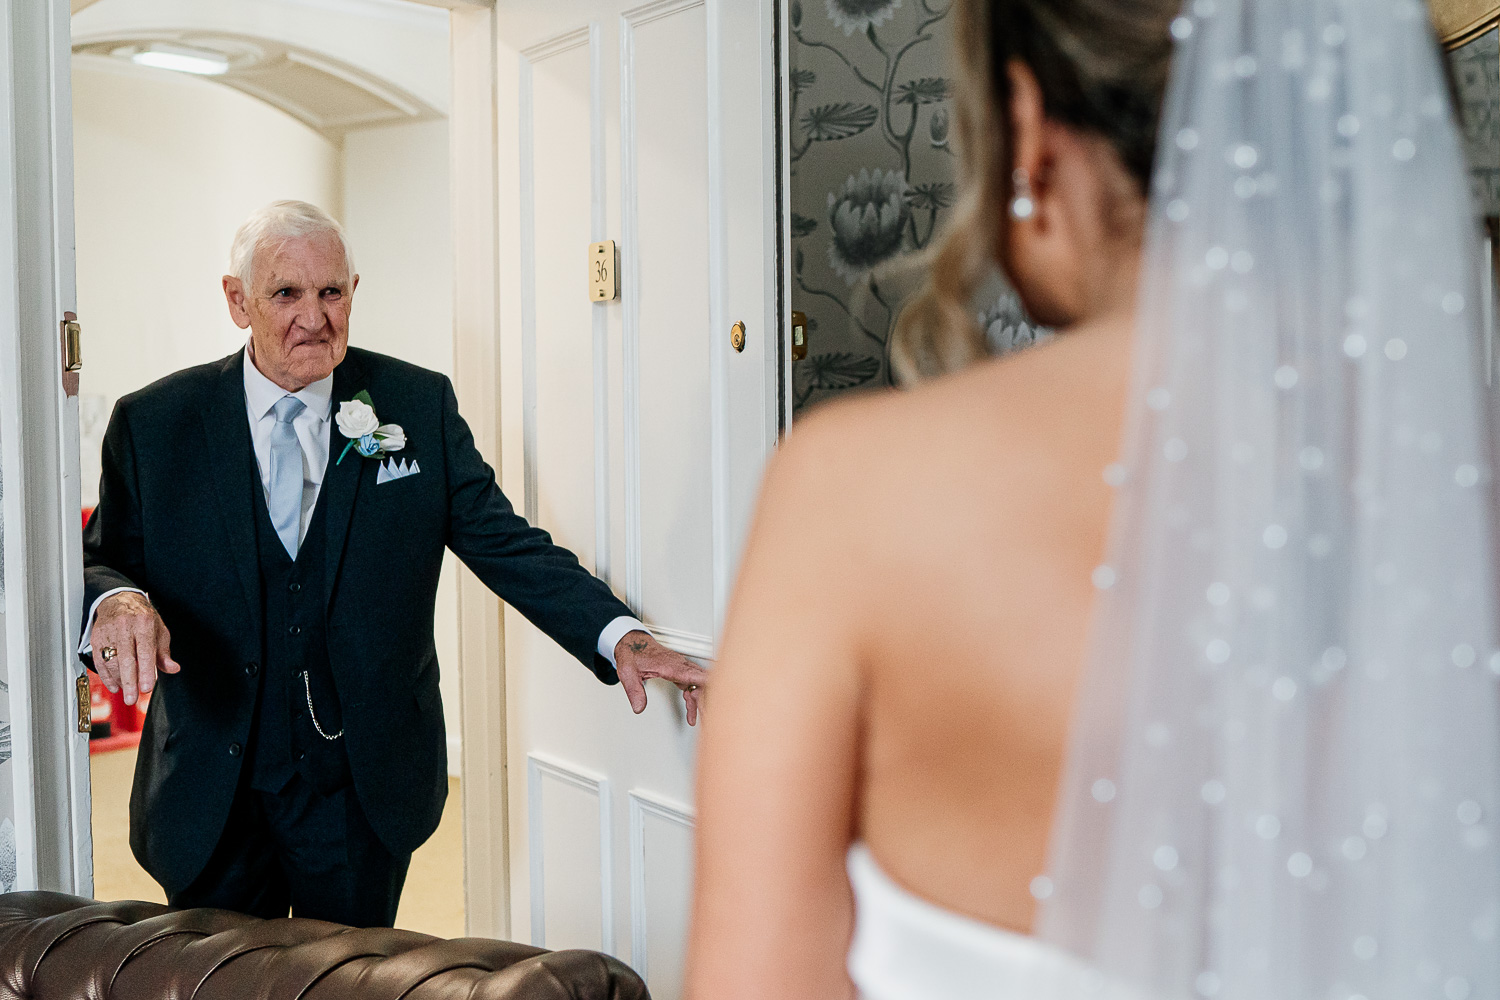 Dad looking at bride